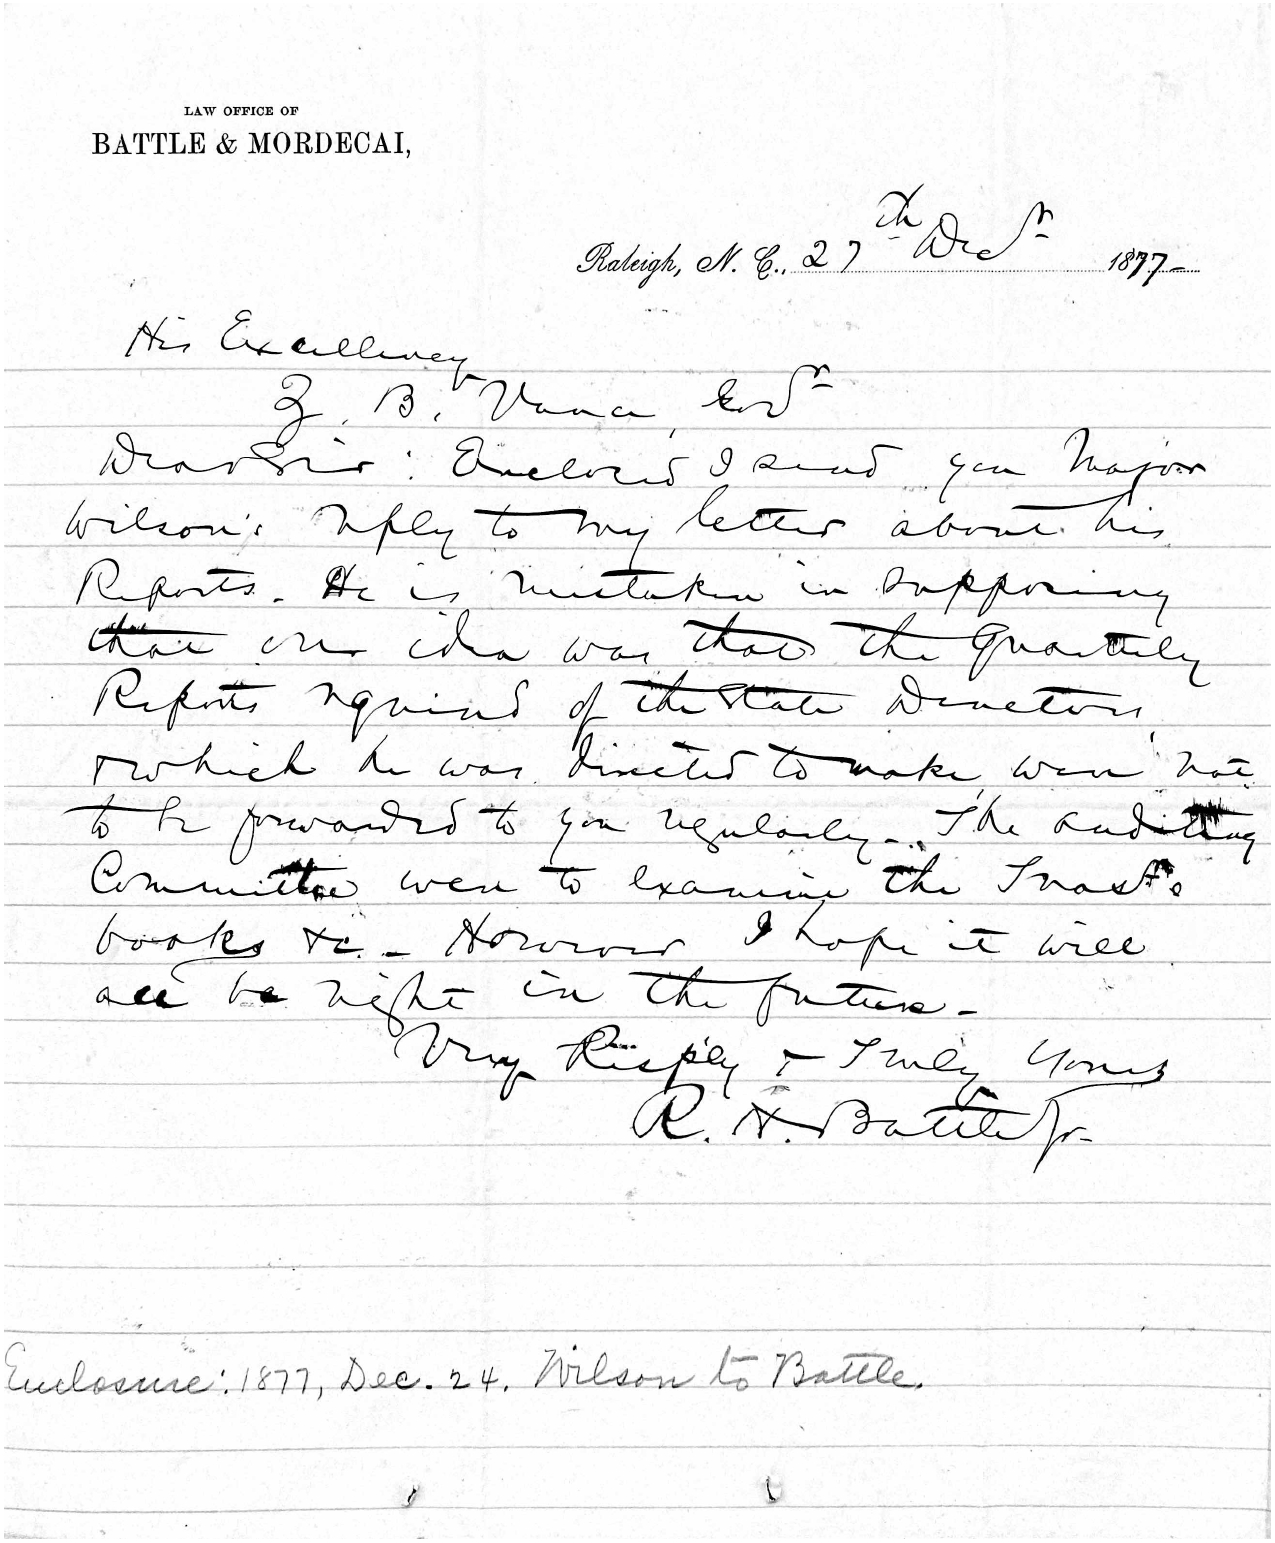 Letter from R. H. Battle to Zebulon B. Vance, 27 December 1877